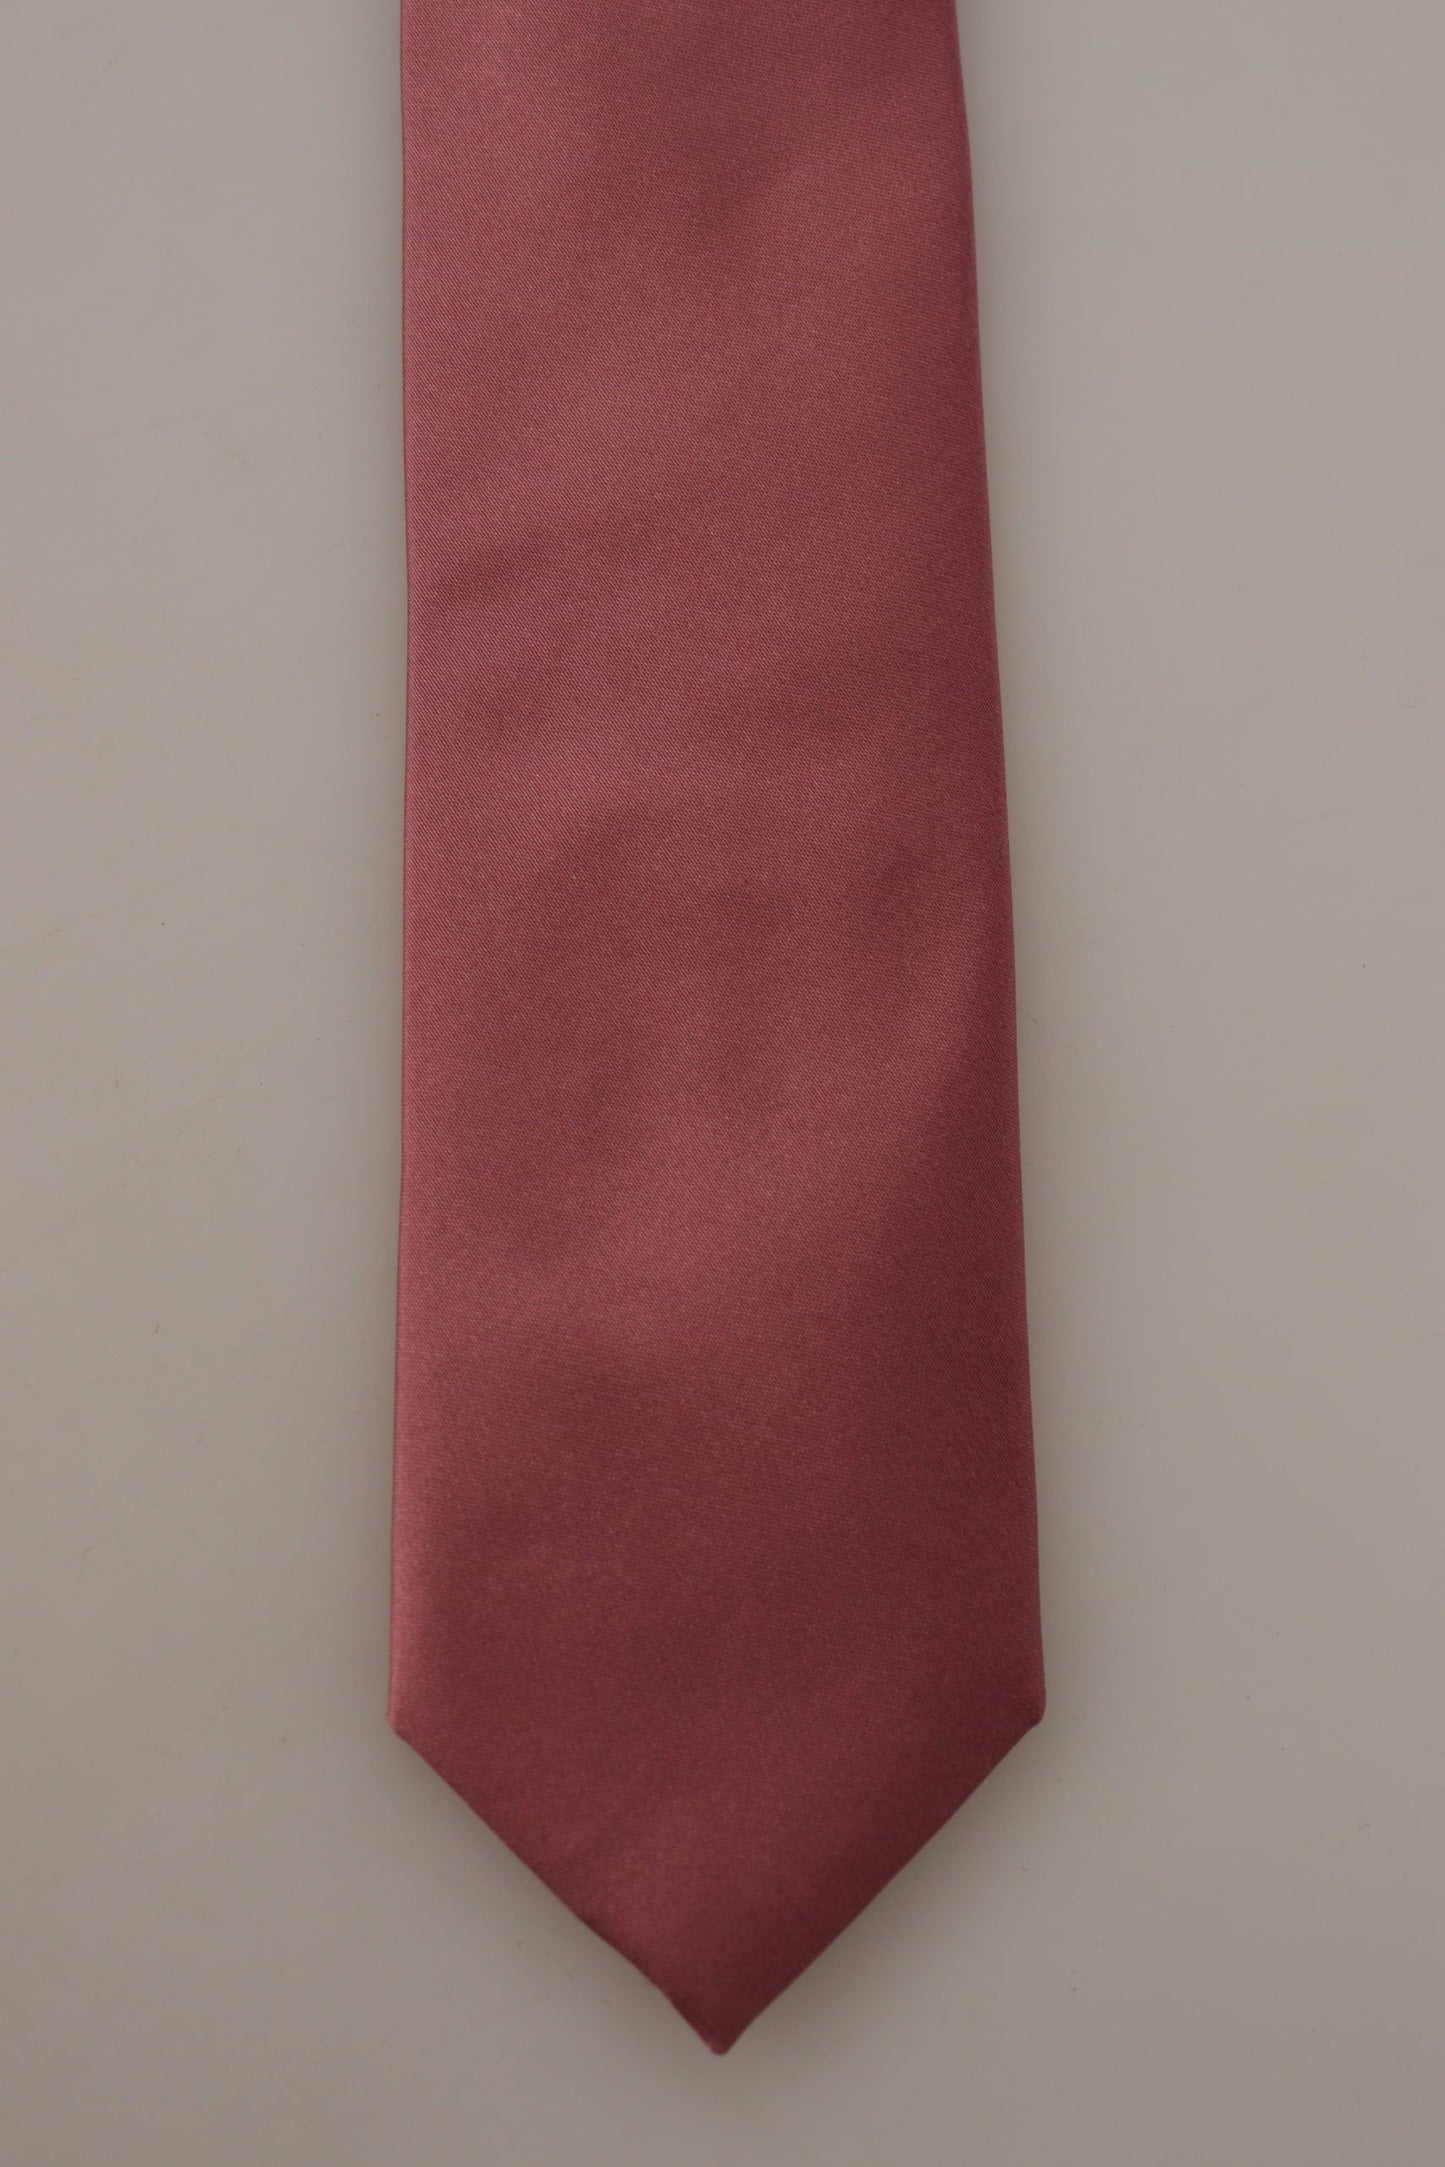 Dolce & Gabbana rose solide imprimer en soie à cravate à cravate réglable